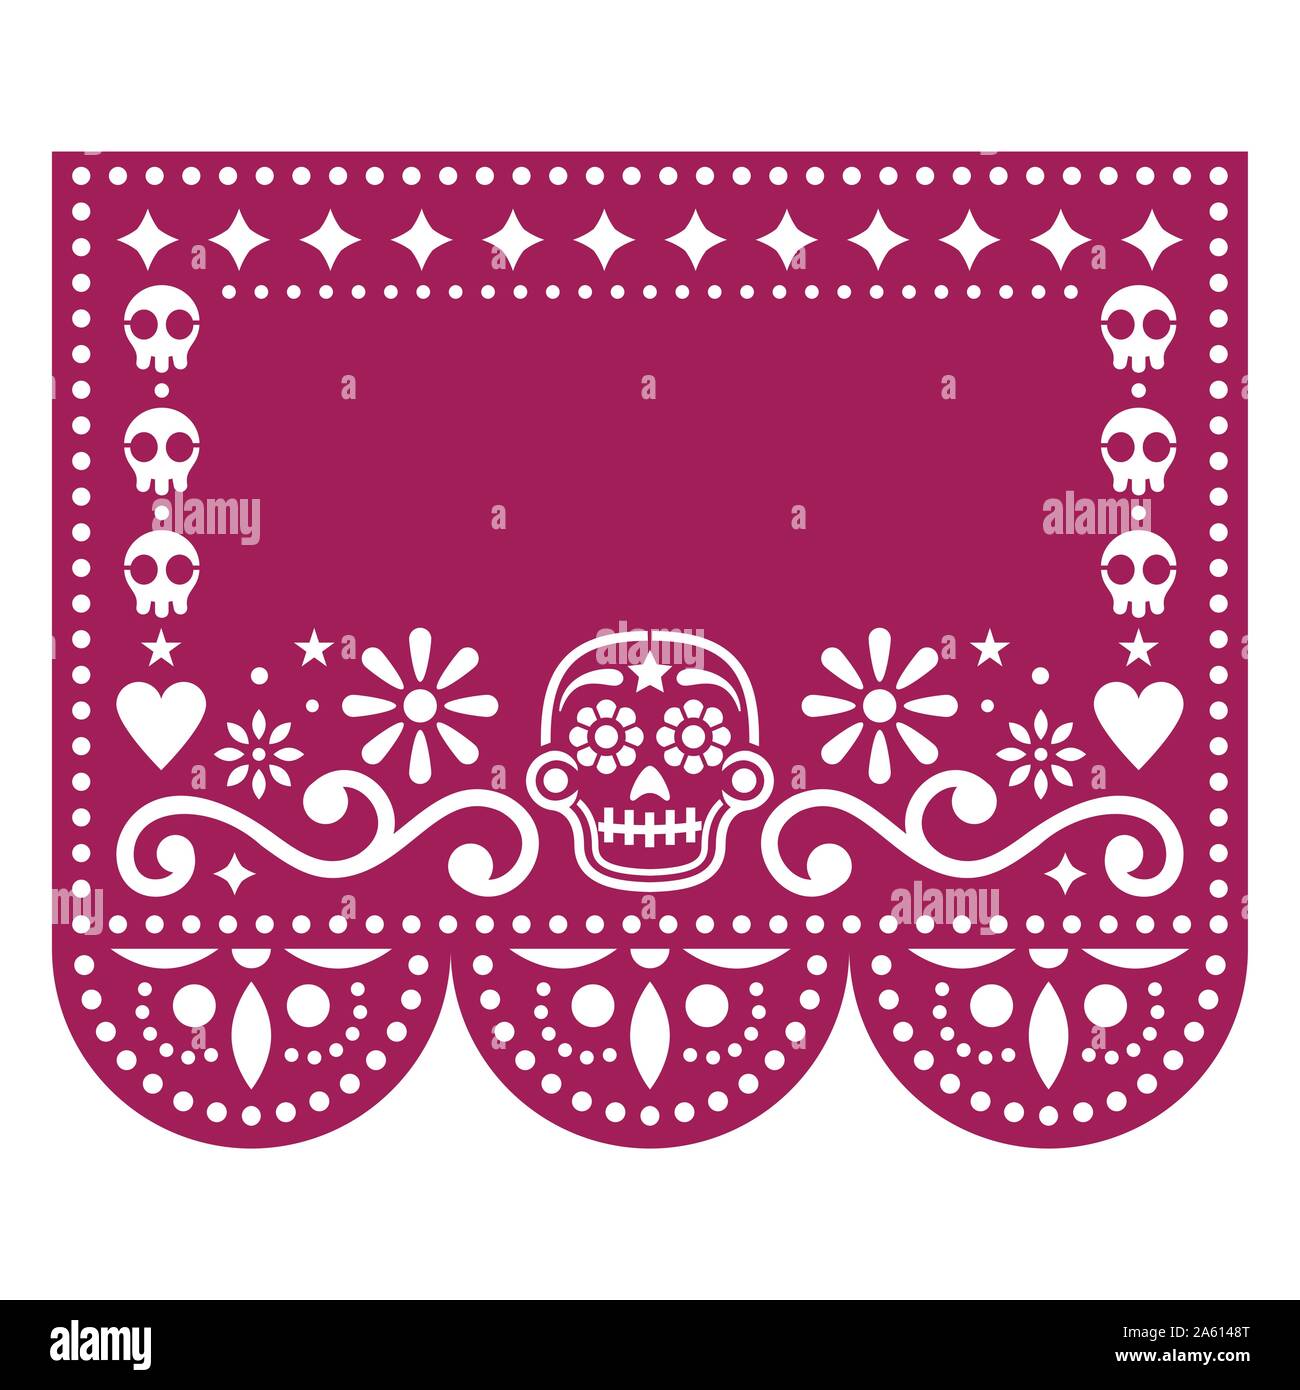 Papel Picado modèle de conception avec des crânes de sucre, découper le papier mexicain garland contexte parfait pour l'Halloween et le Jour des Morts Illustration de Vecteur